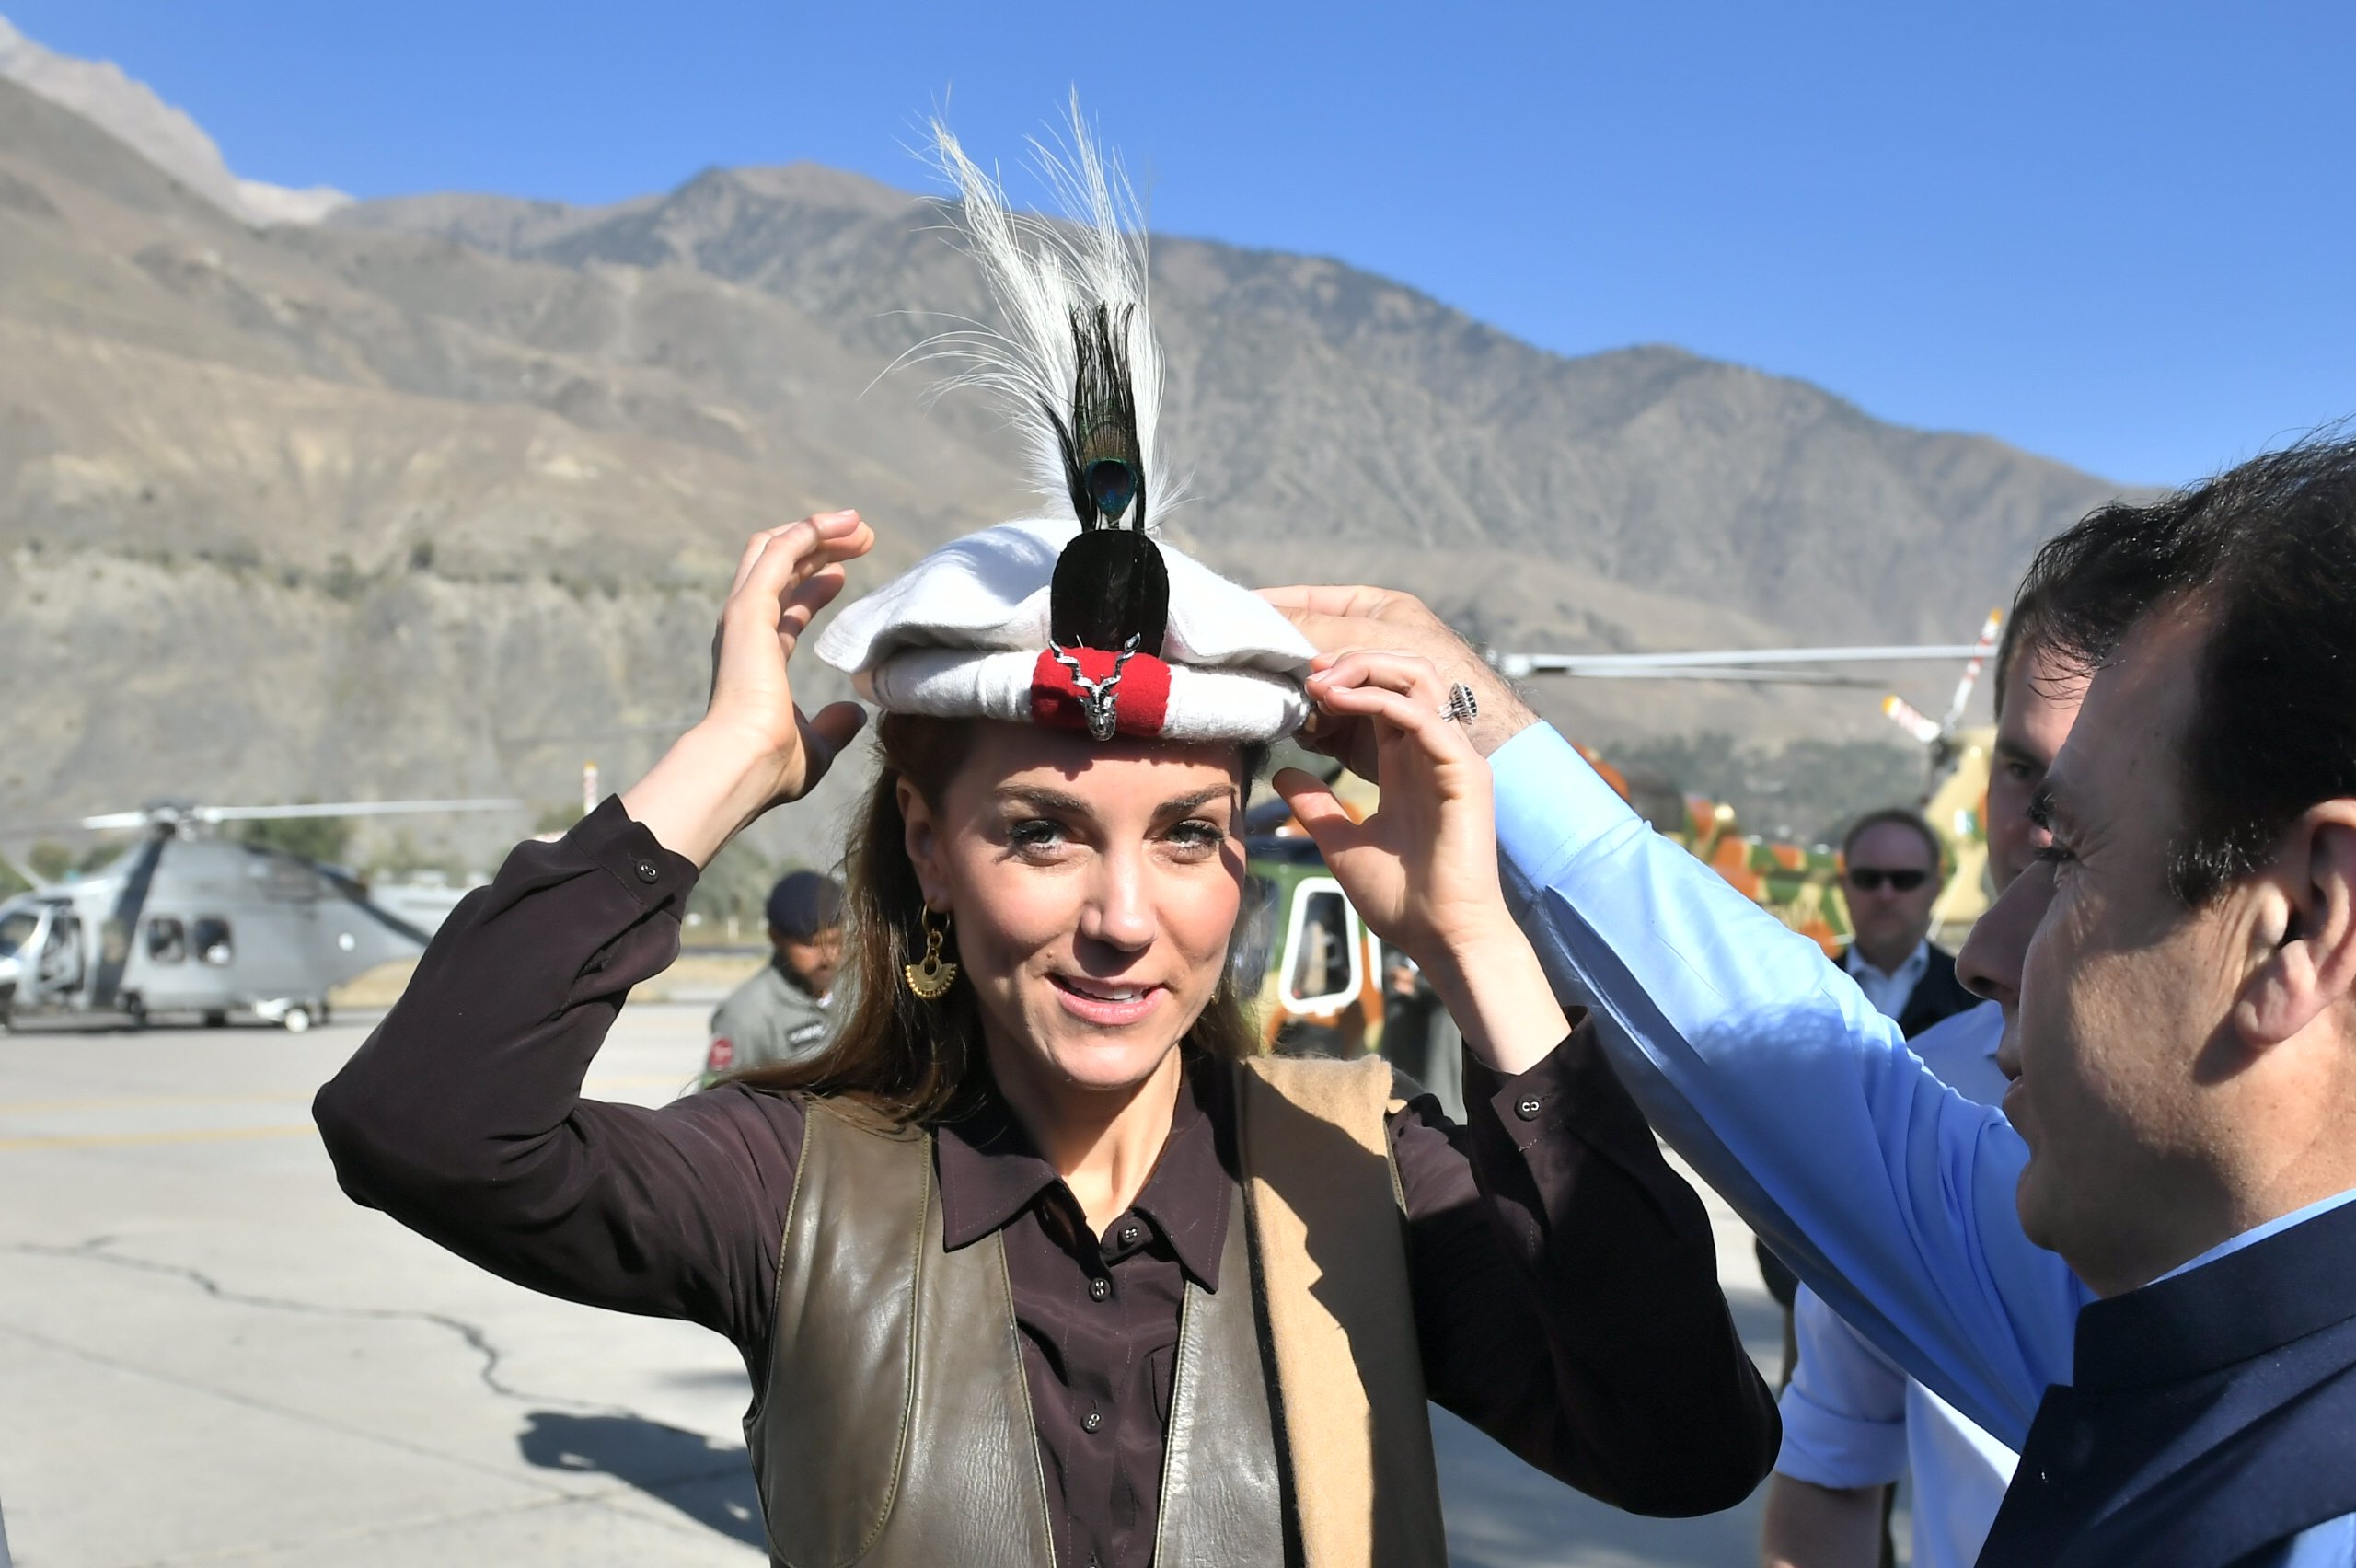 Le prince William et Kate Middleton sont accueillis à leur arrivée en hélicoptère le 16 octobre 2019 à Chitral, au Pakistan. | Source : Getty Images.